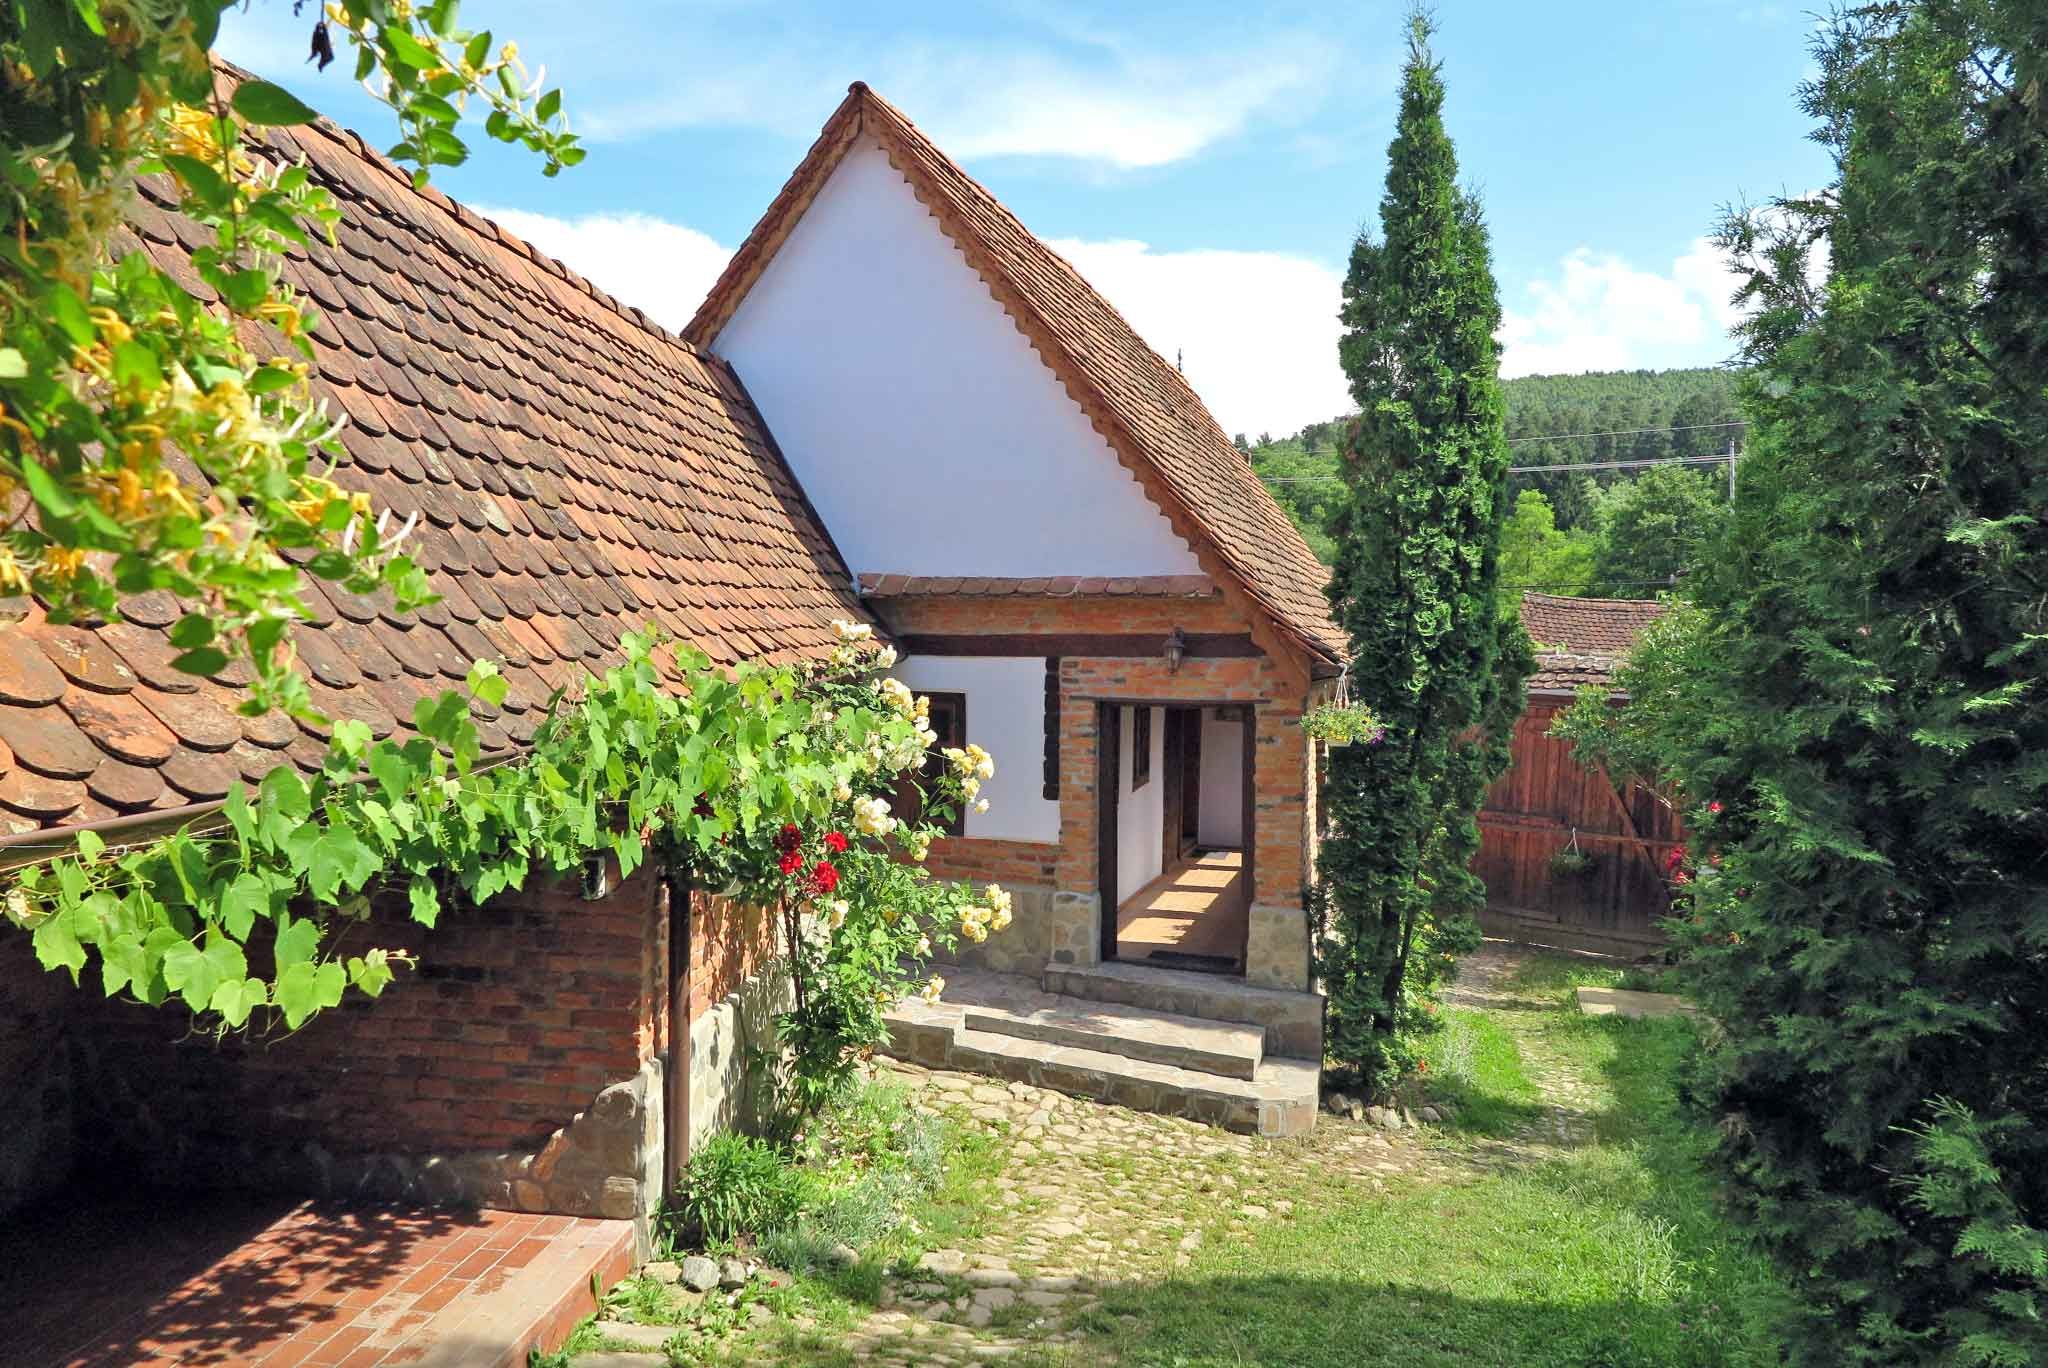 Casa Lopo - traditioneller Bauernhof - maximale En  in Rumänien